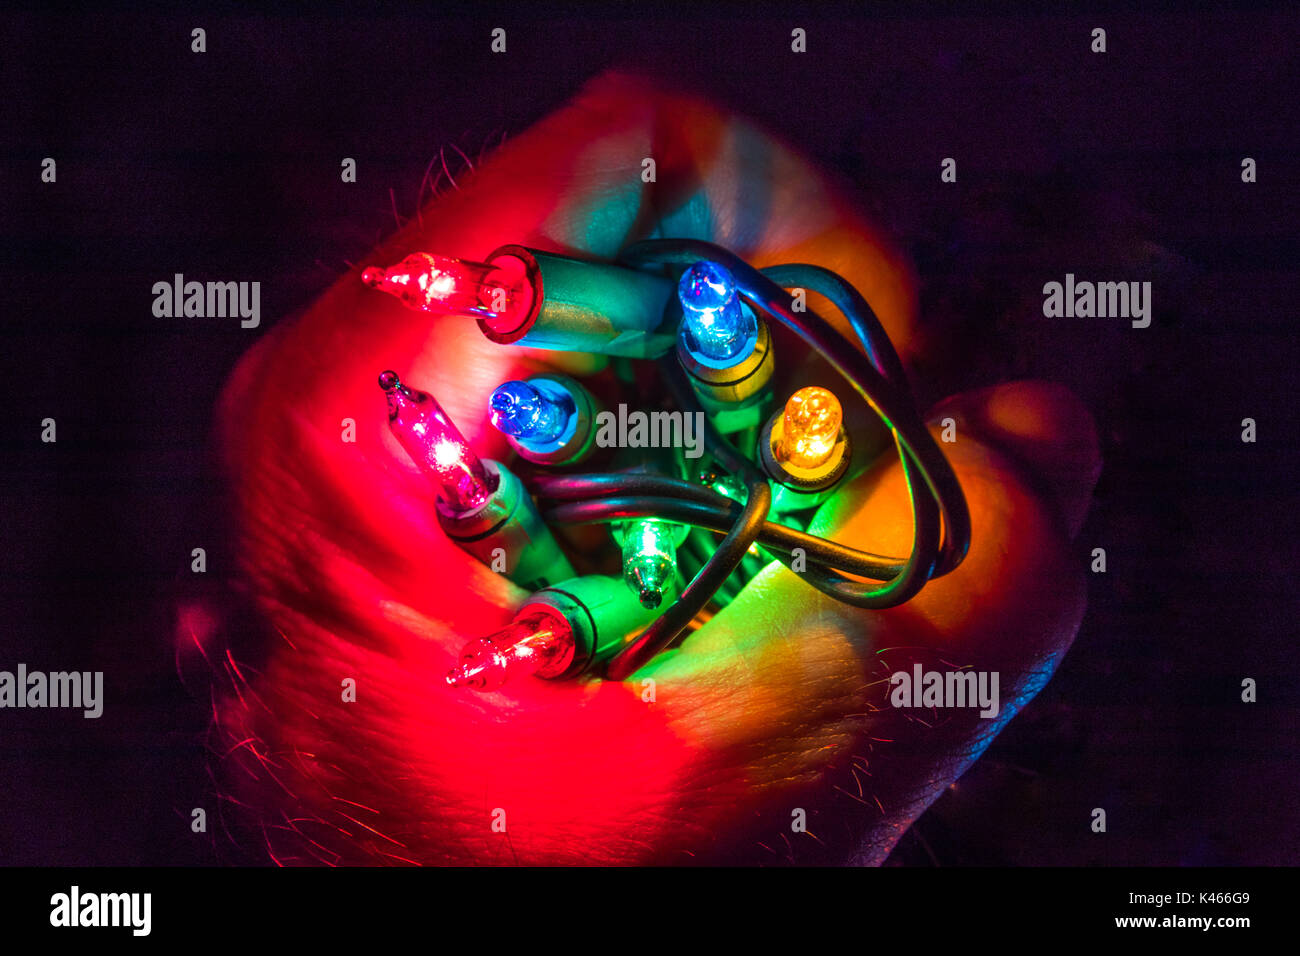 Horizontale Foto von bunten Holiday Lights in einem geschlossenen Hand gehalten wird Stockfoto